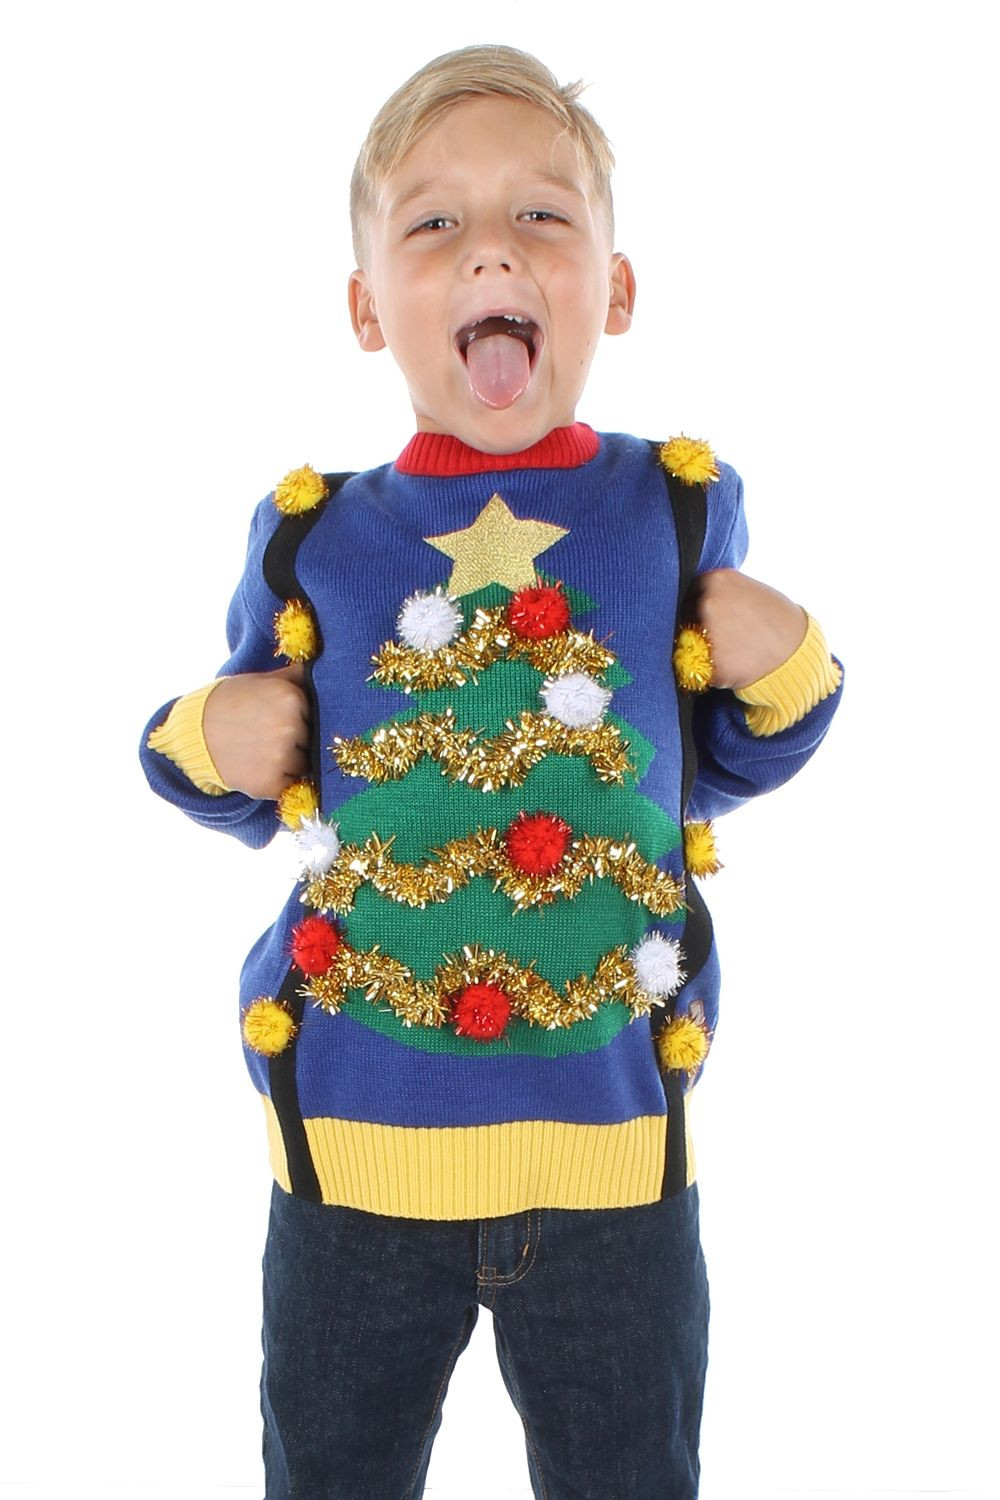 Toddler Ugly Christmas Sweater DIY
 Pin on Christmas